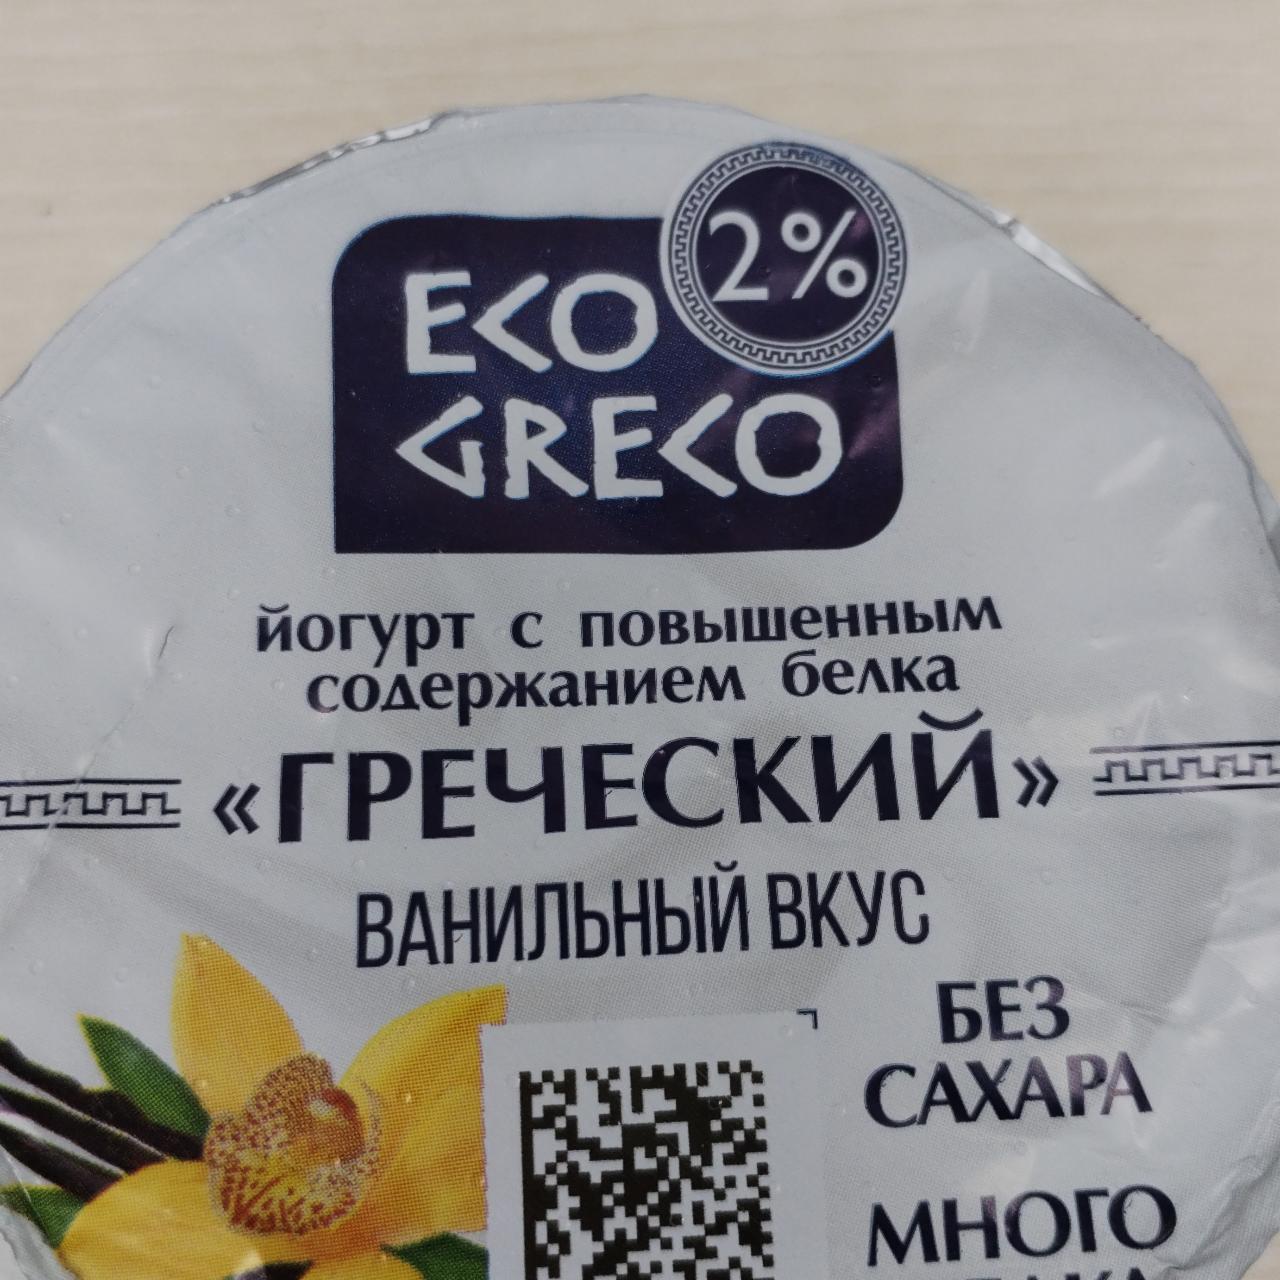 Фото - Йогурт 2% Греческий с ванильным вкусом Eco Greco